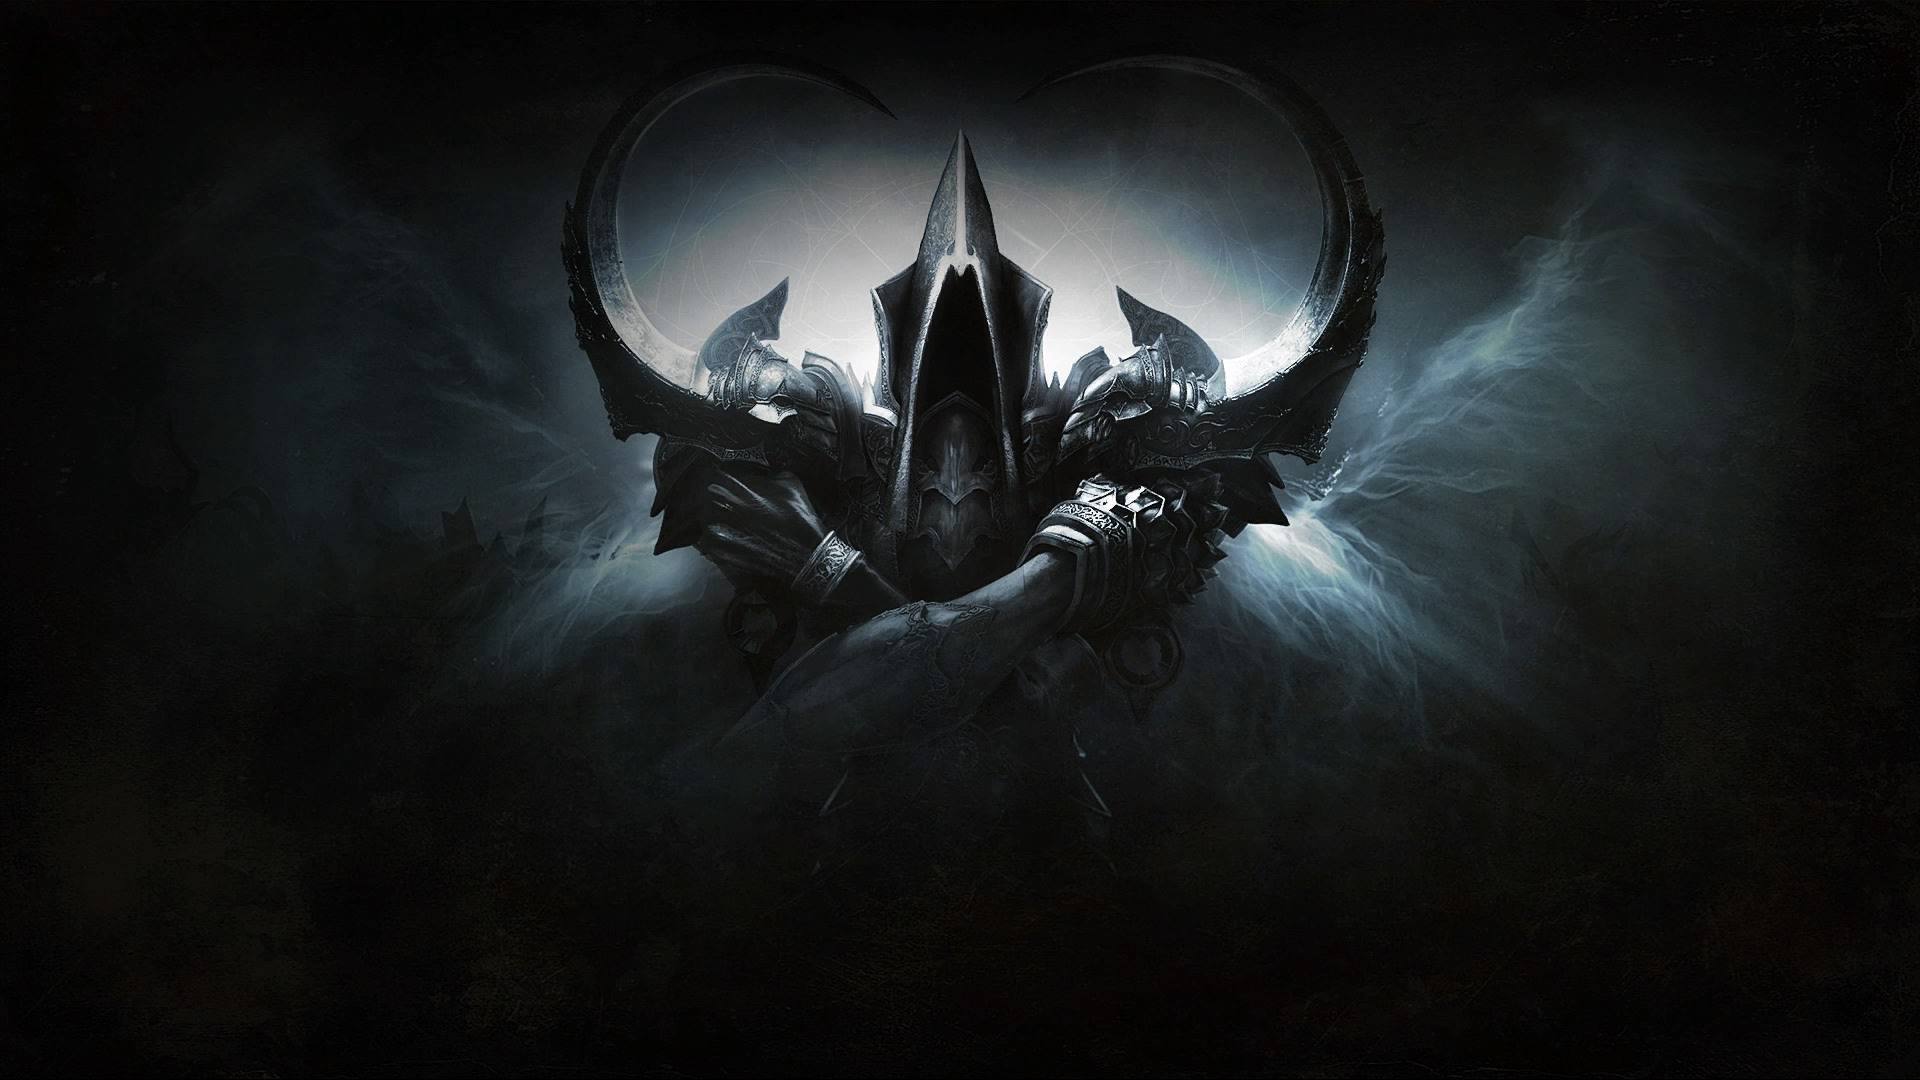 Diablo III - Reaper of Souls - PS4 - Wallpaper do Malthael - 1920x1080